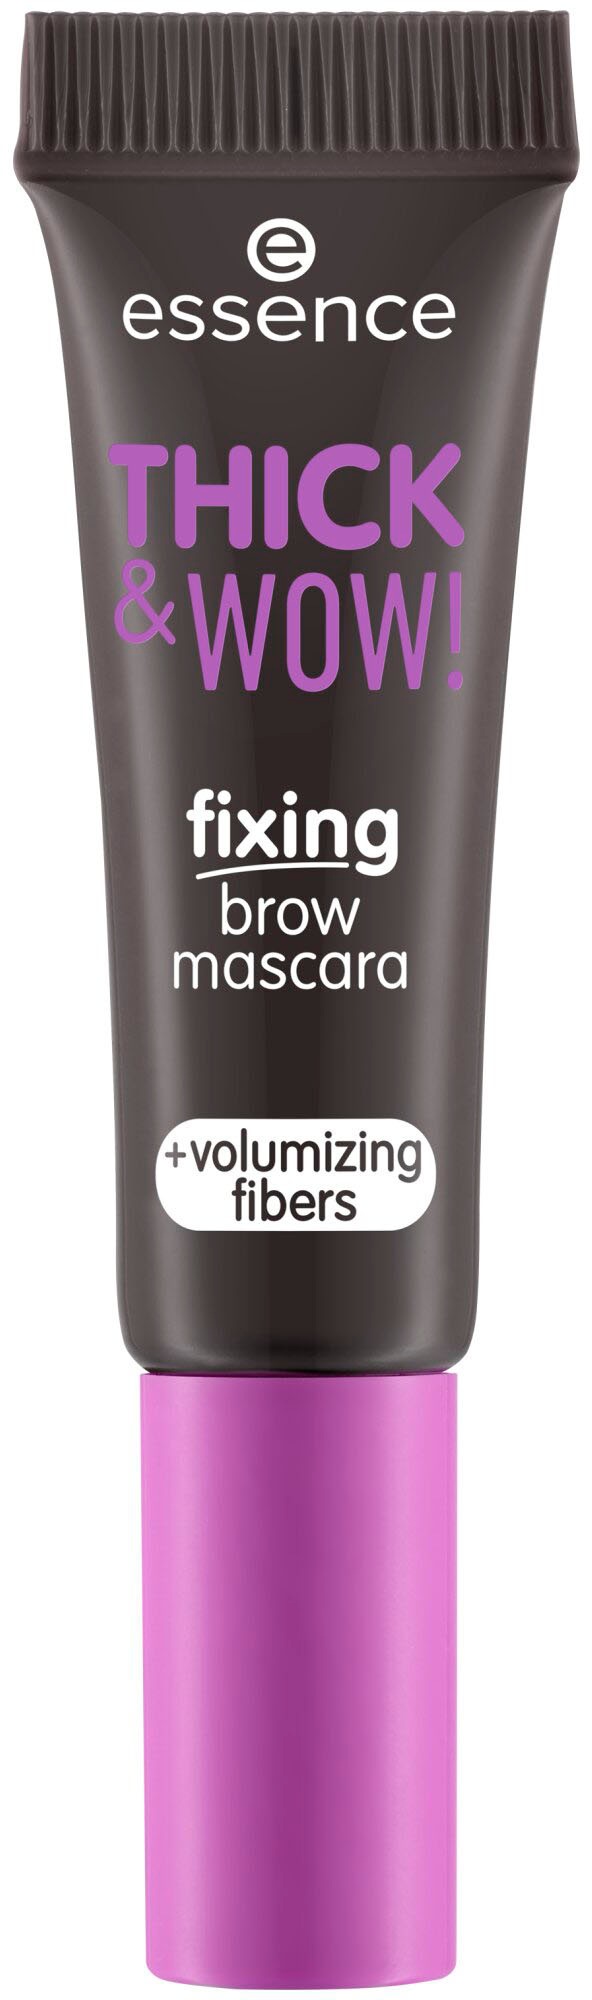 mascara«, »THICK | BAUR tlg.) Augenbrauen-Gel online brow kaufen & (3 Essence WOW! fixing